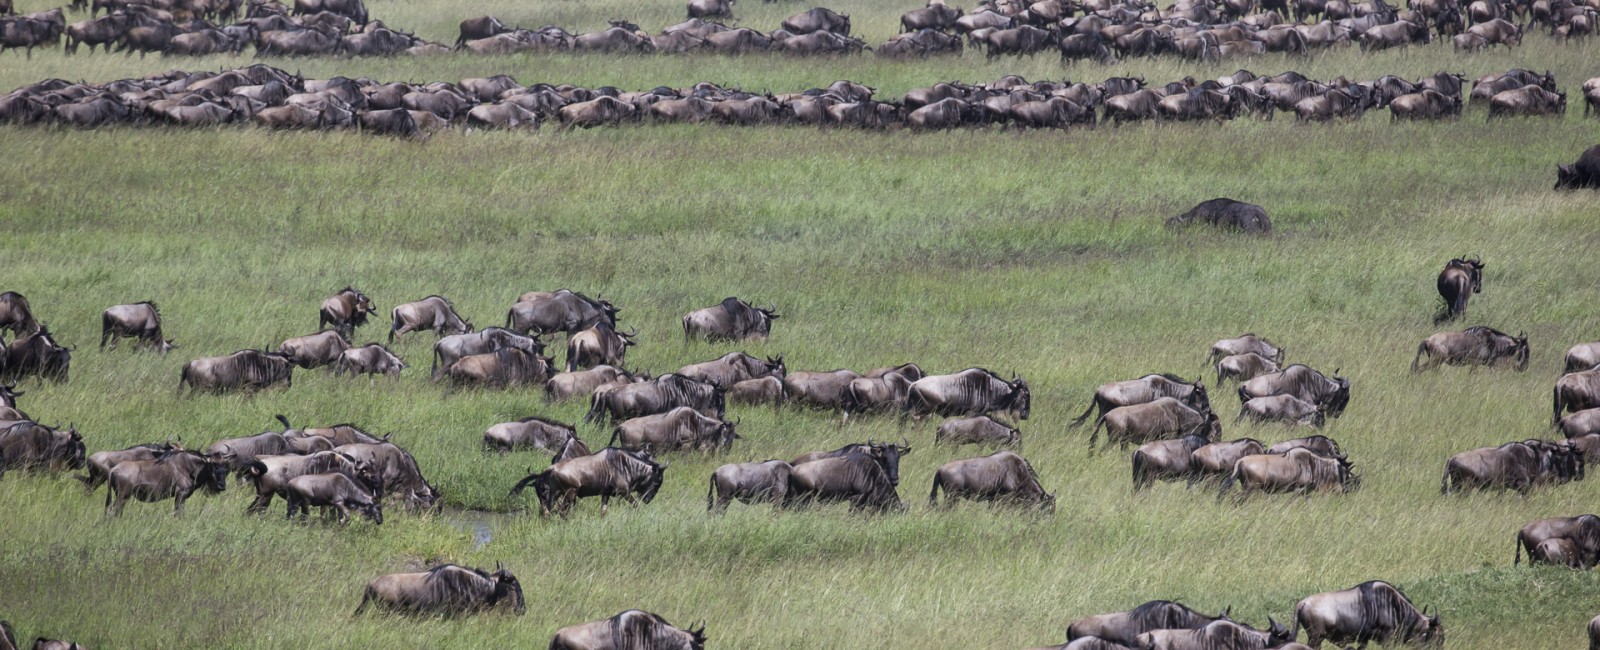 Permalink to The Tanzania Safari: Day 8